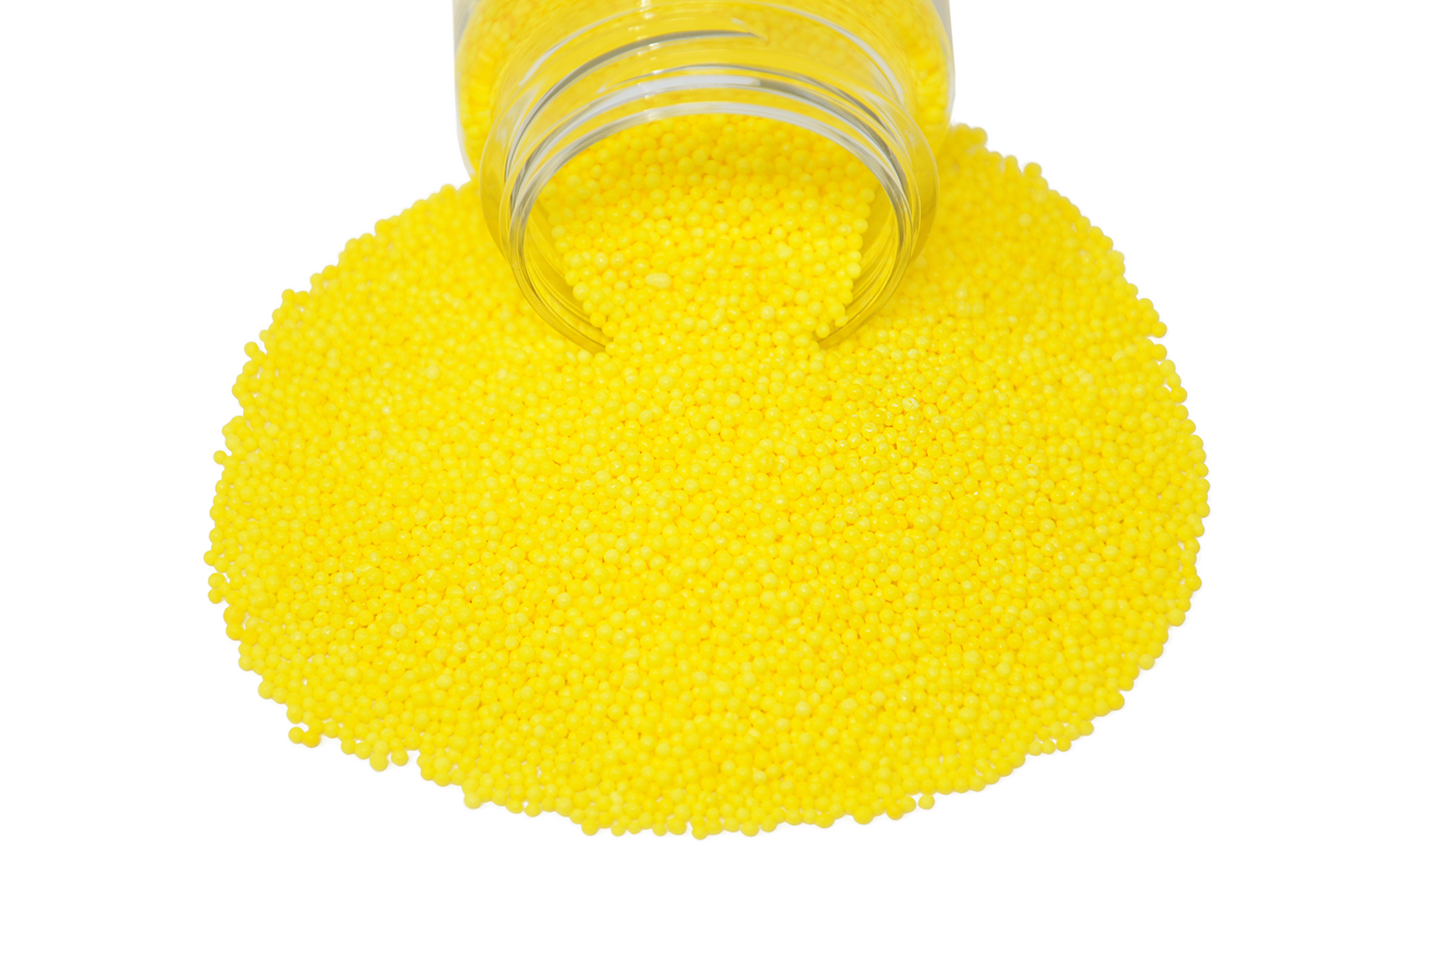 Yummy Yellow Nonpareils 3.8oz Bottle